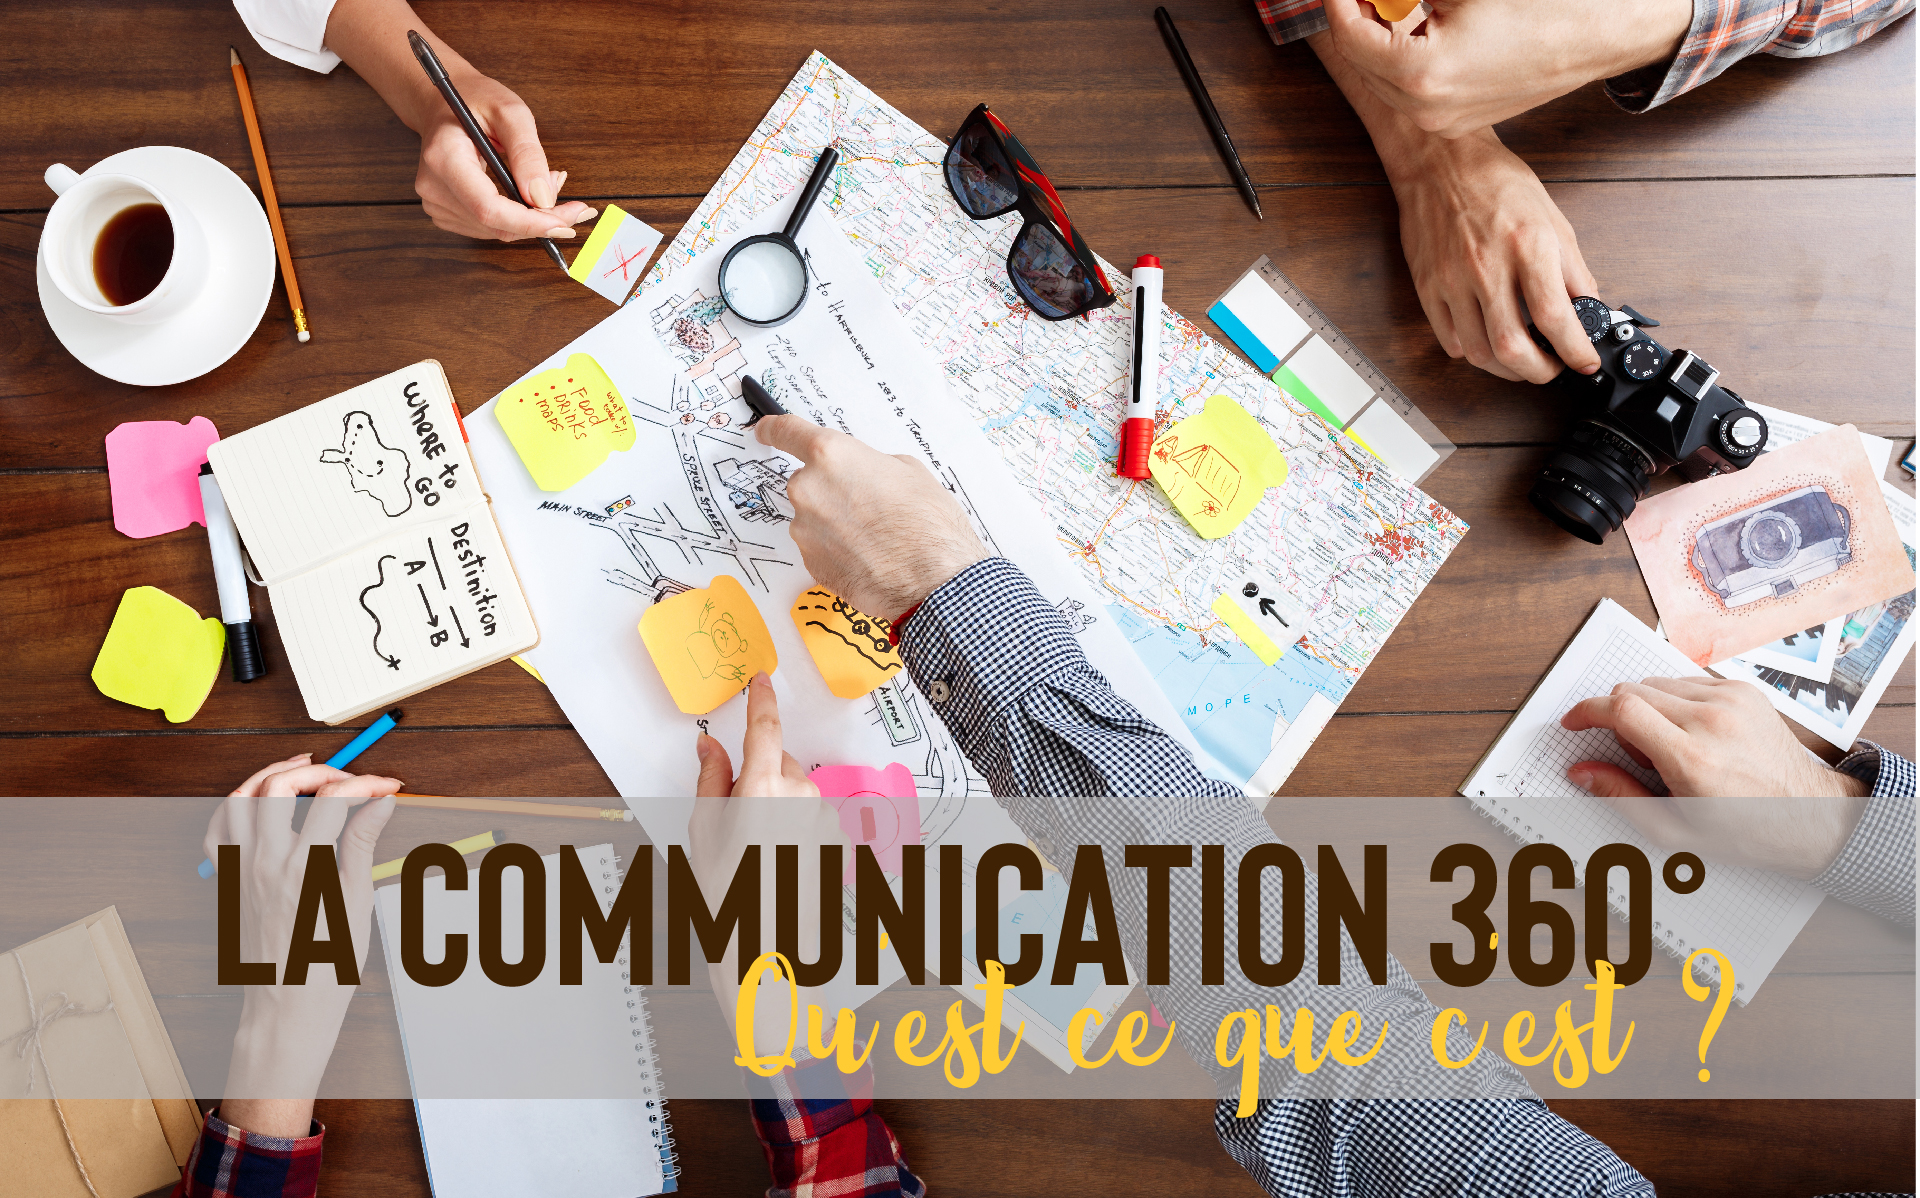 La Communication 360°, qu’est ce que c’est ?